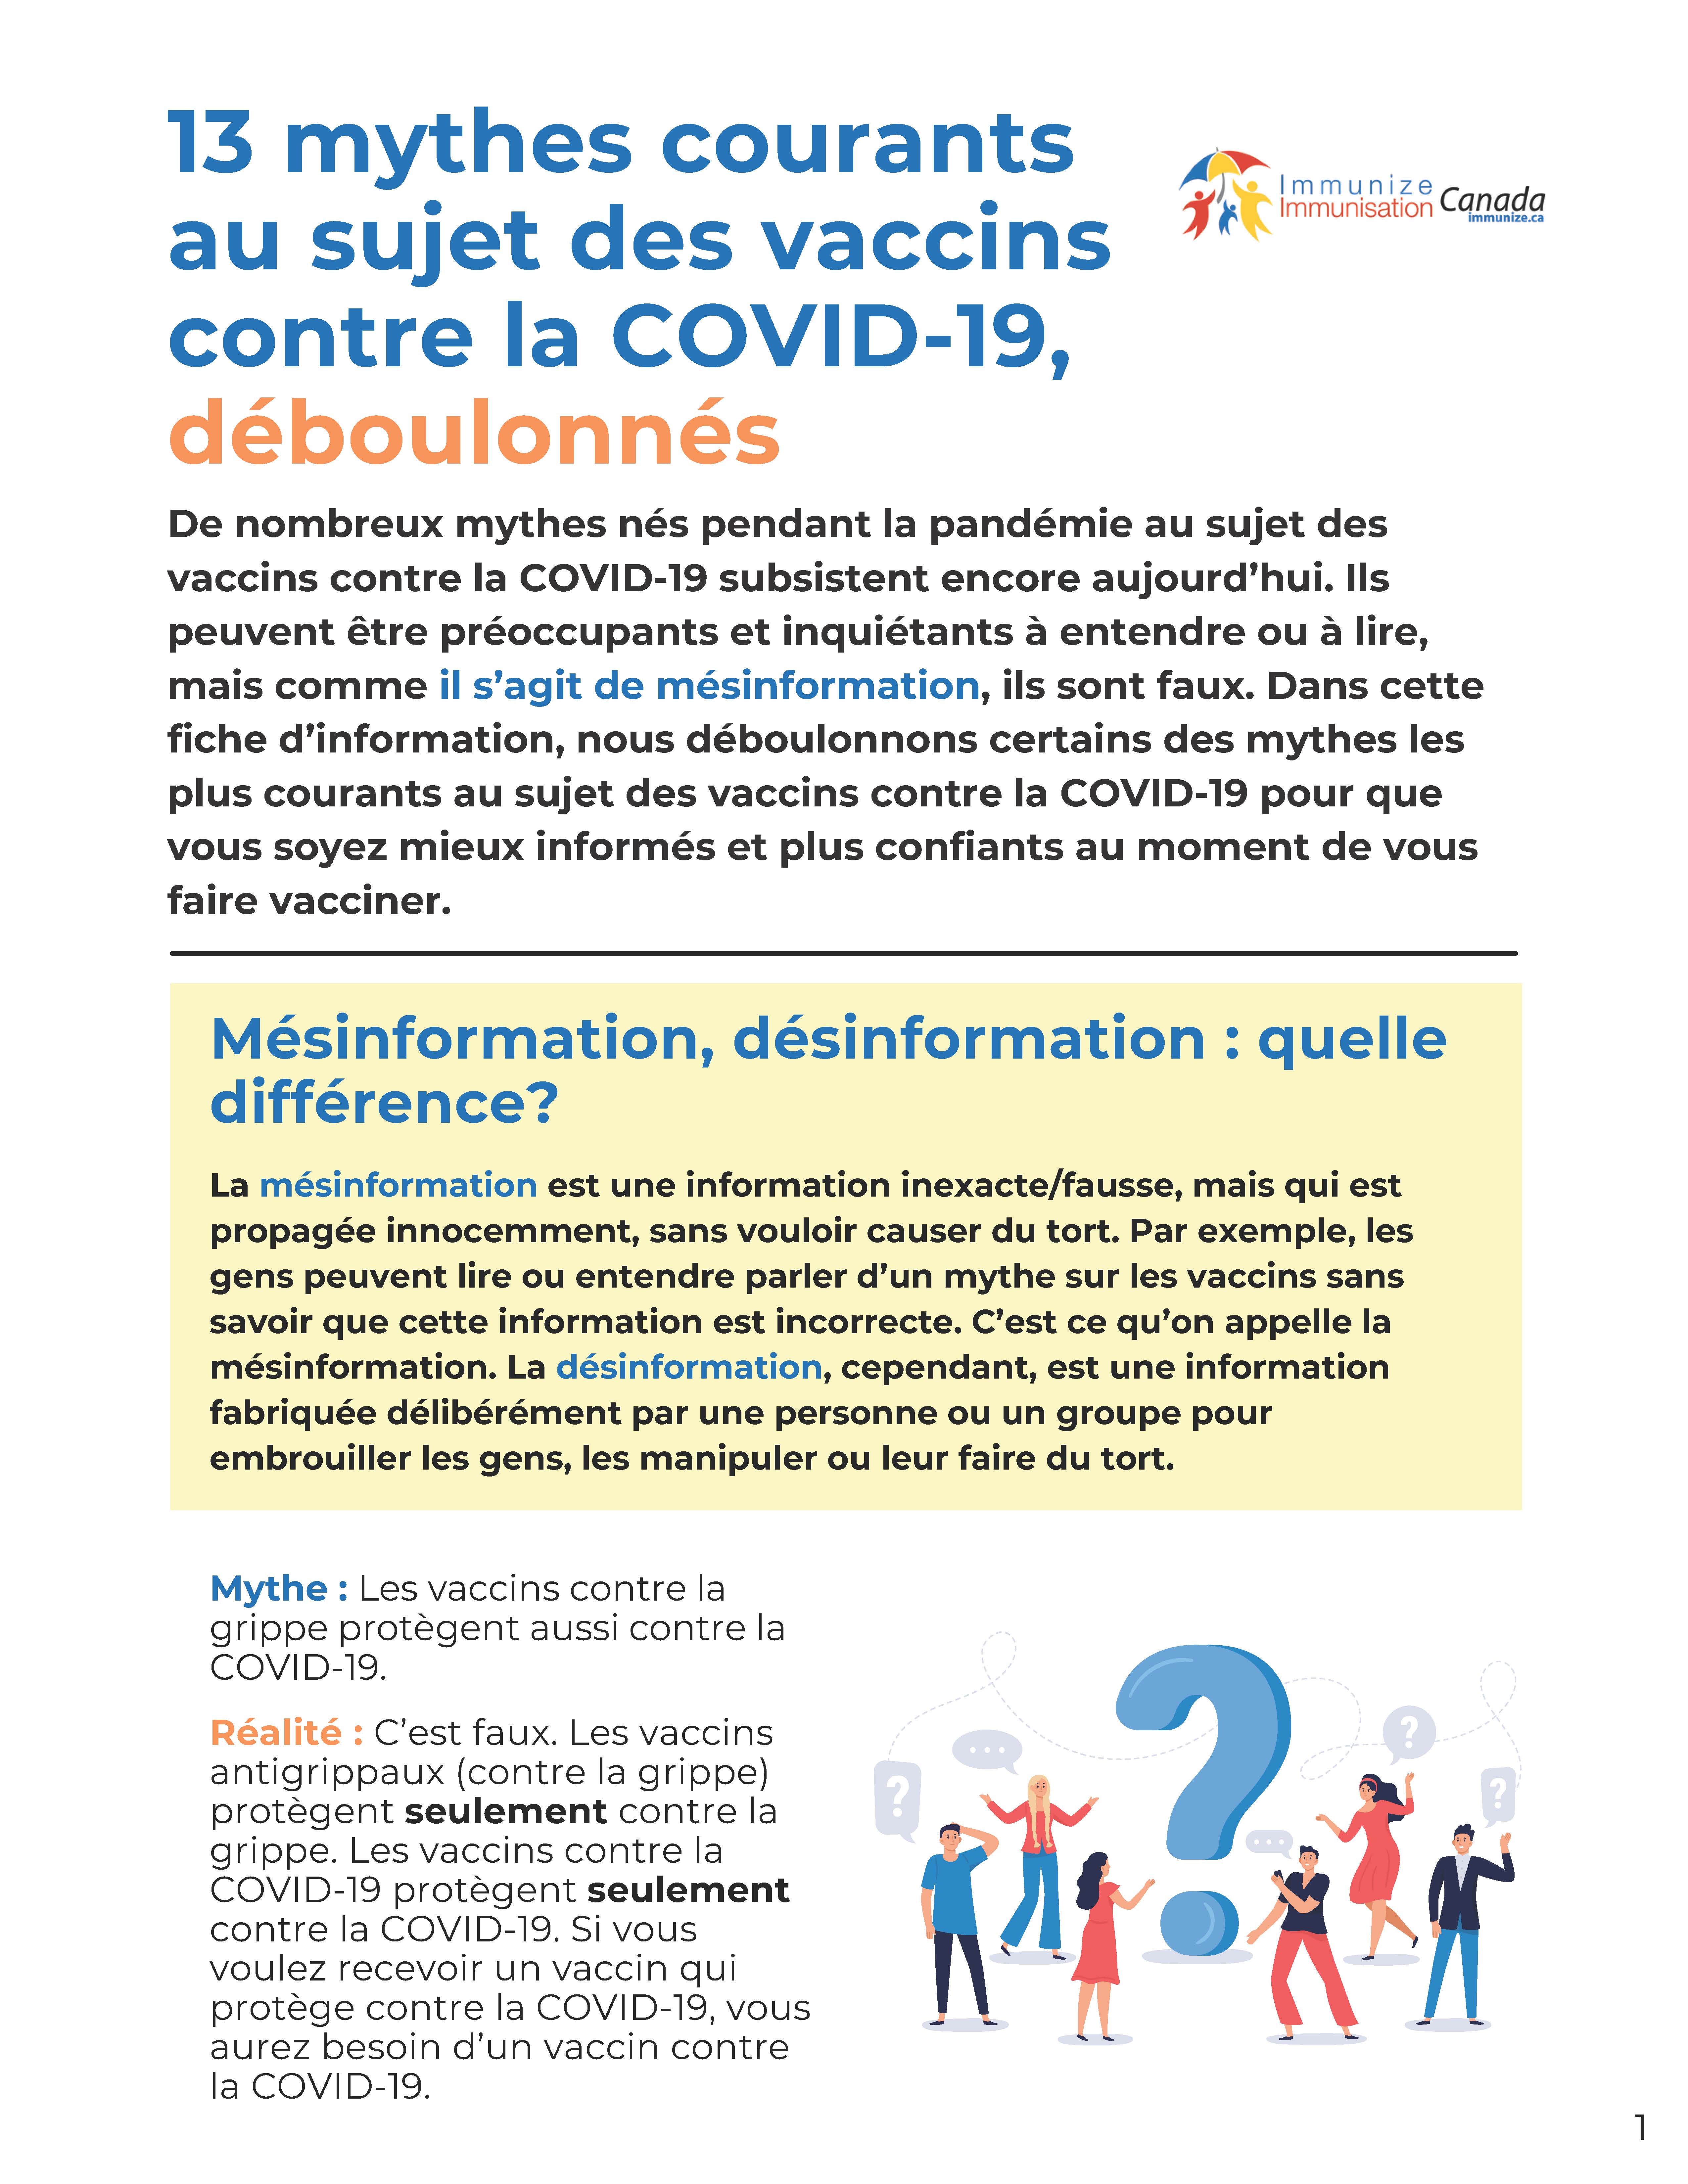 13 mythes courants au sujet des vaccins contre la COVID-19, déboulonnés - feuillet de renseignements